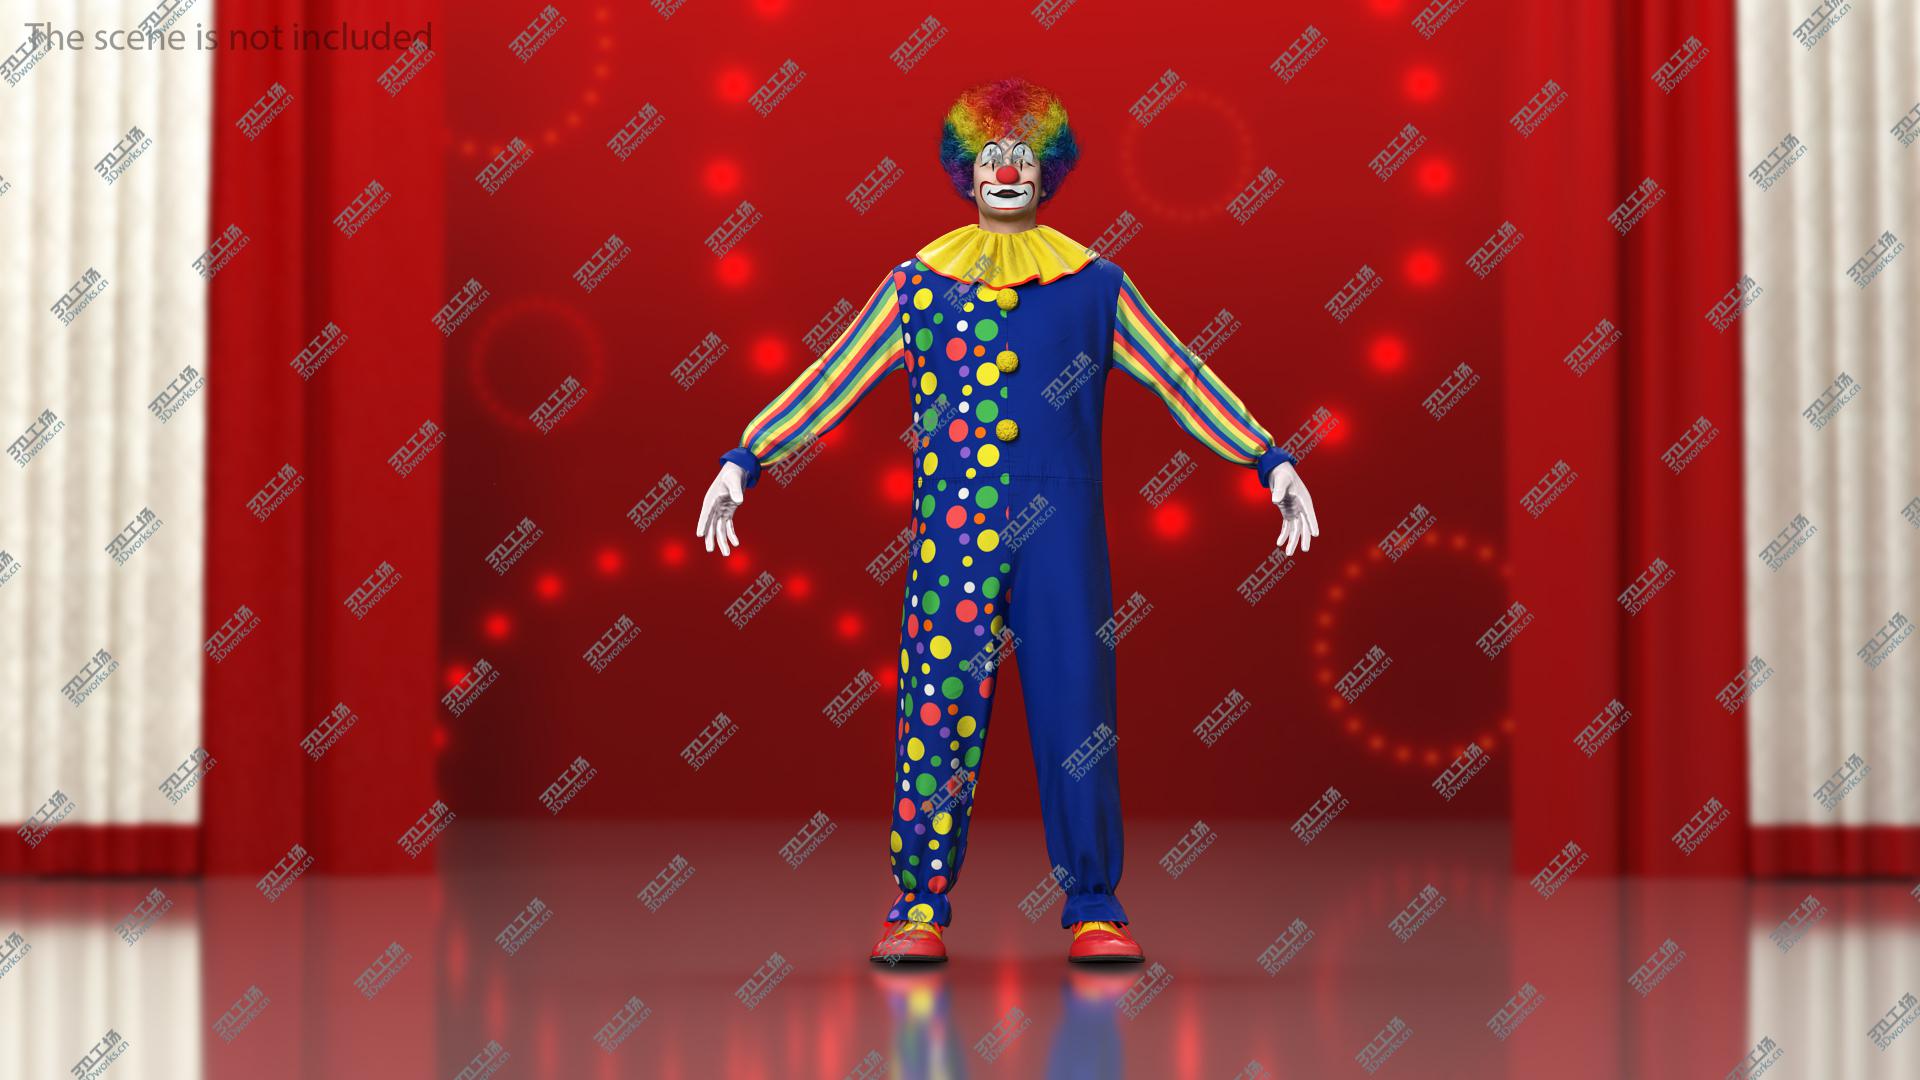 images/goods_img/202104093/3D model Funny Clown Costume Fur/4.jpg